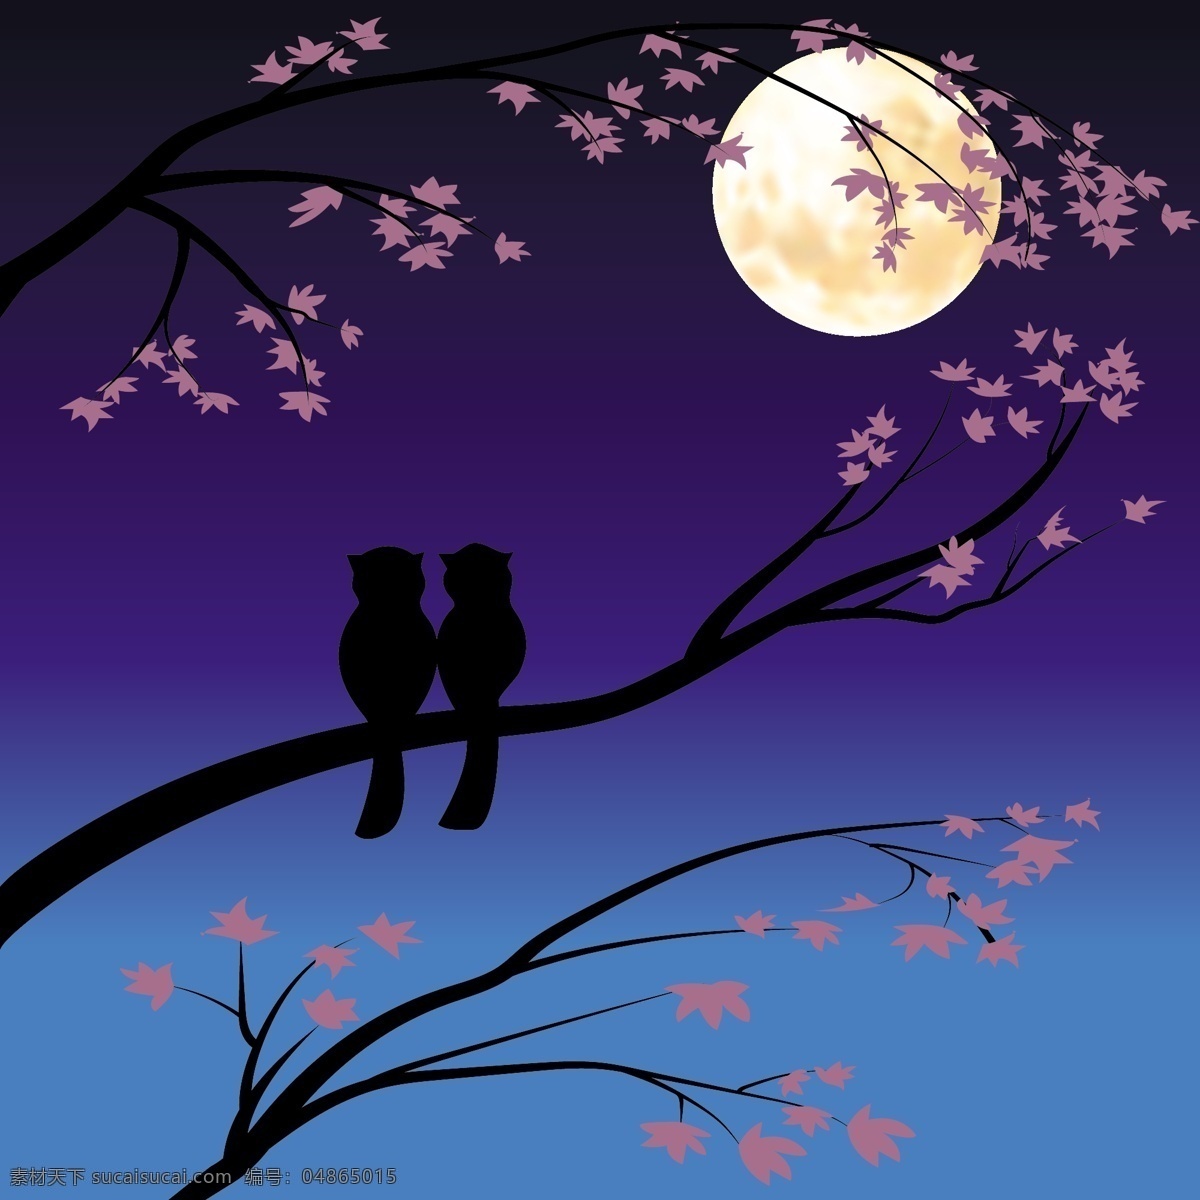 夜晚 枝头 上 浪漫 小鸟 插画 动物 月亮 唯美 爱情